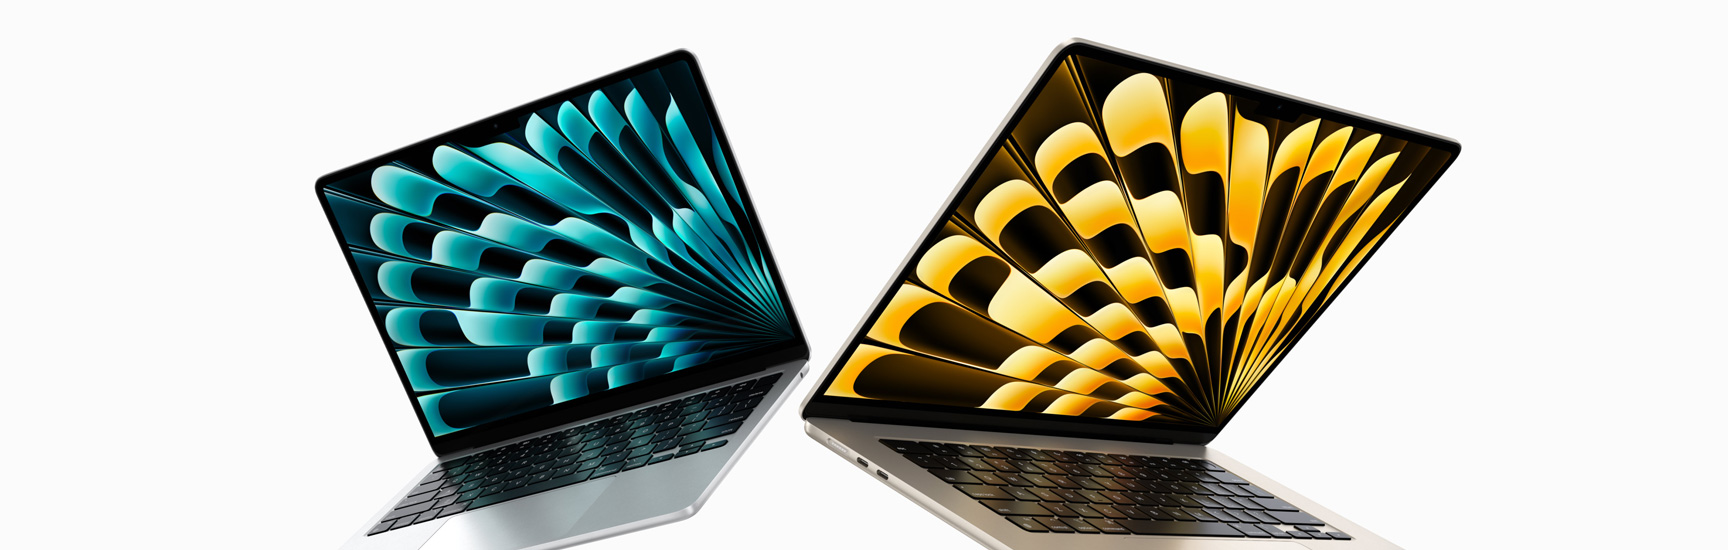 Delvis öppna 13-tums och 15-tums MacBook Air i silver och stjärnglans sedda framifrån, så att man ser skillnaden i skärmstorlek.